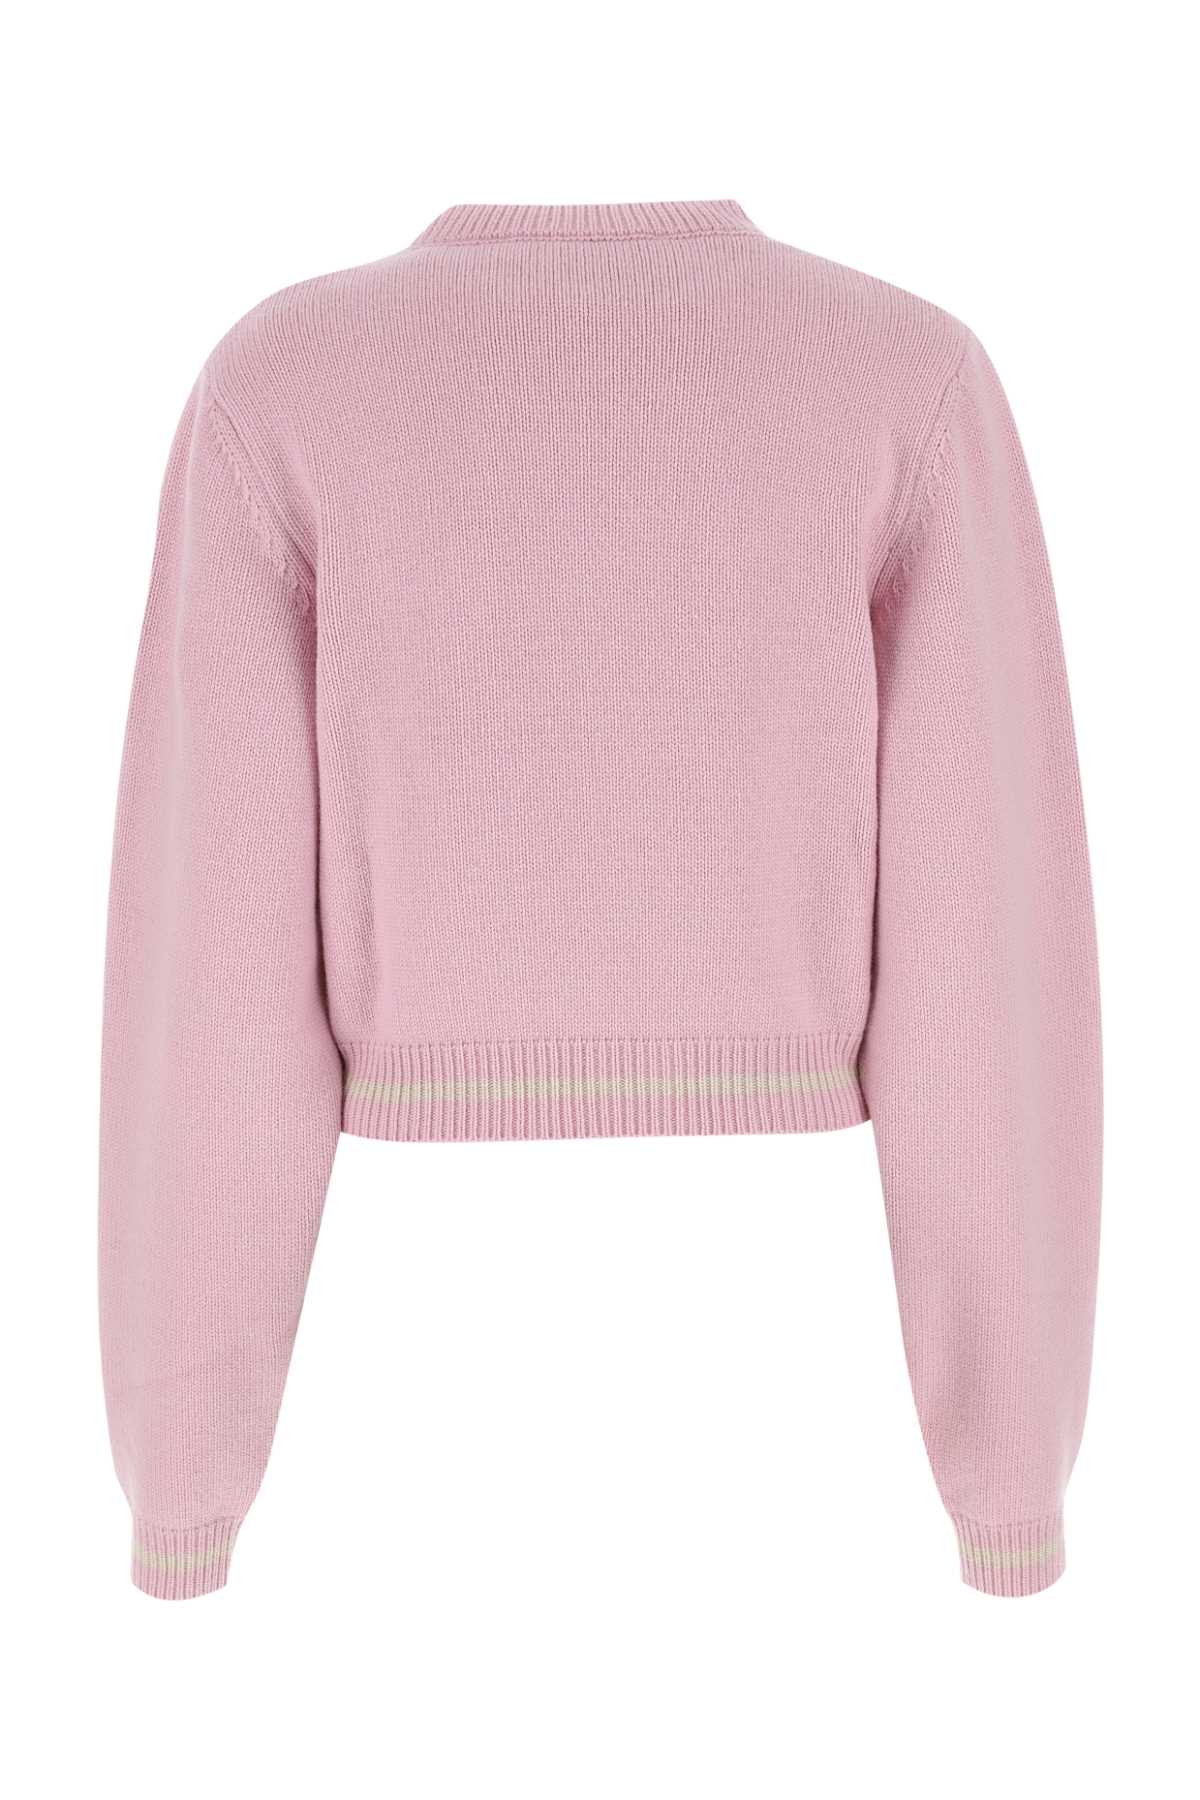 Marni Pink Wool Sweater In 00c18